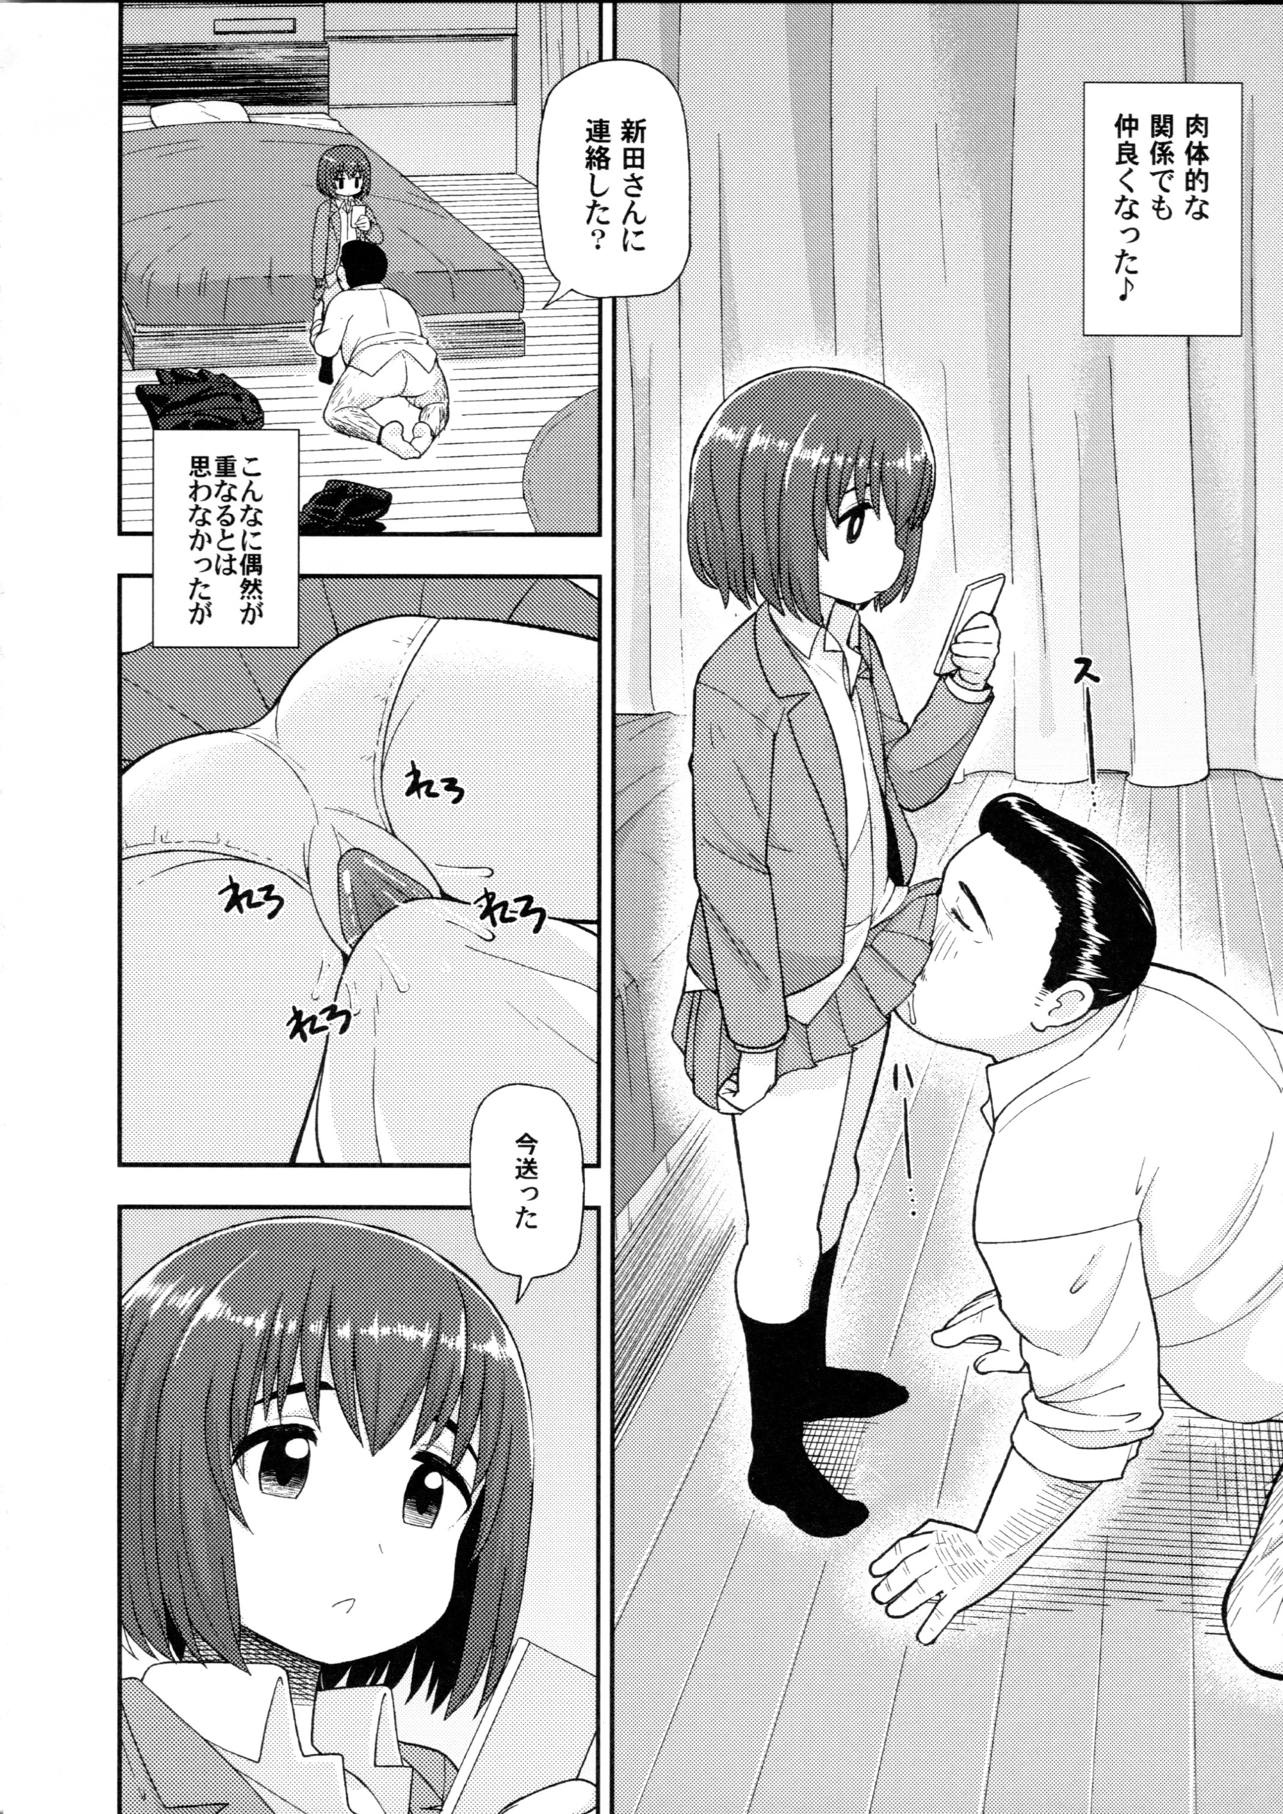 【ヒナまつり】女子中学生のヒナちゃんが新田に内緒でおじさんと援助交際するなんて…。の画像5枚目